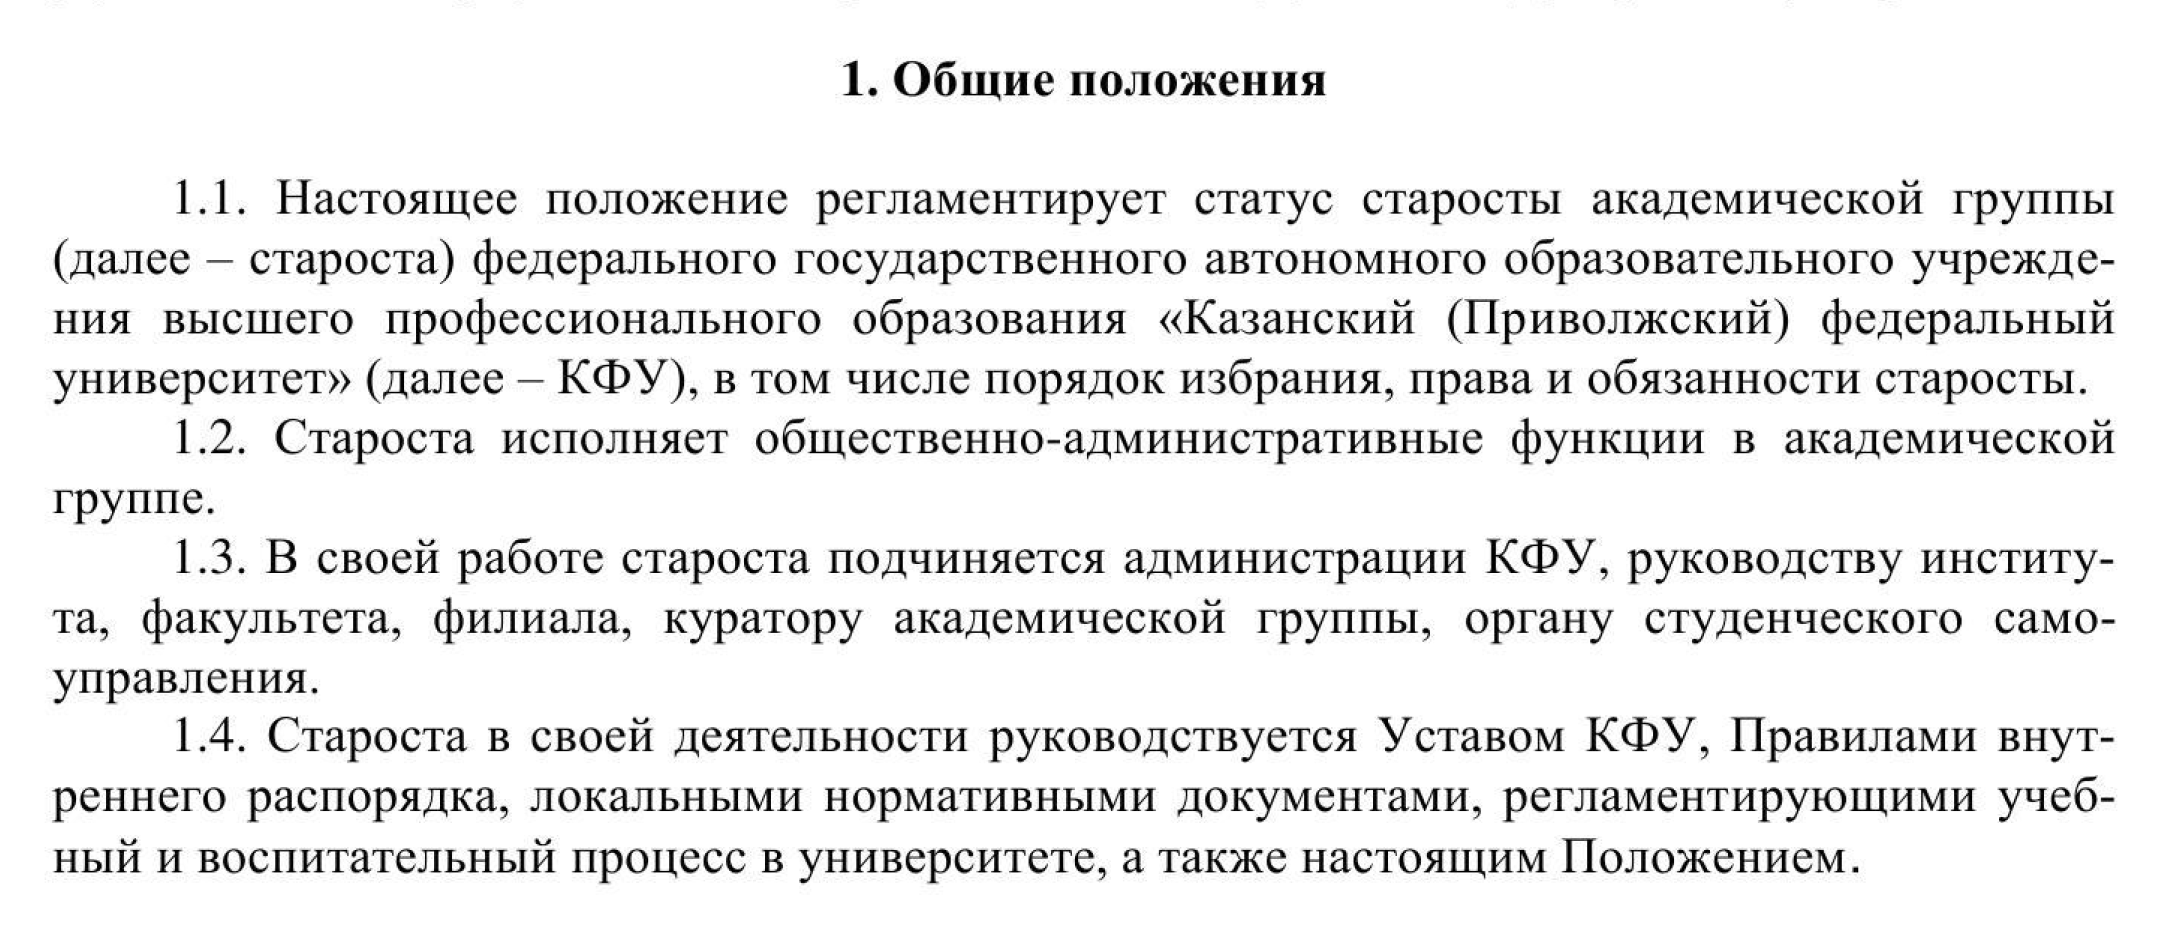 Вот что написано о статусе старосты в документе Казанского (Приволжского) федерального университета. Источник: kpfu.ru